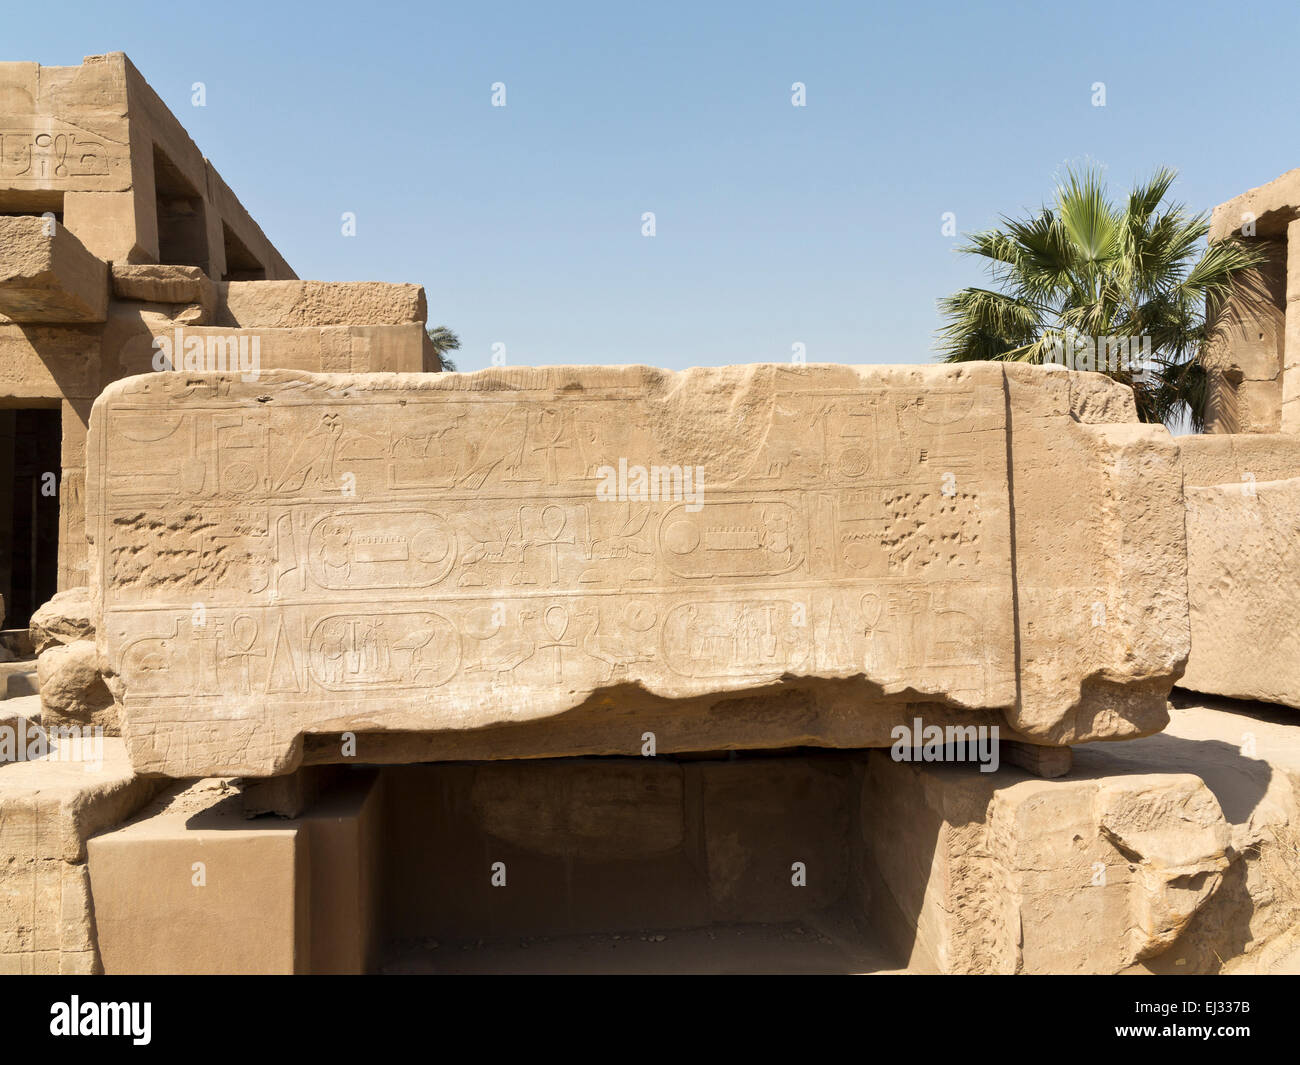 gefallenen Sturz innerhalb der Tempel des Amun in Karnak, Luxor, Ägypten Stockfoto